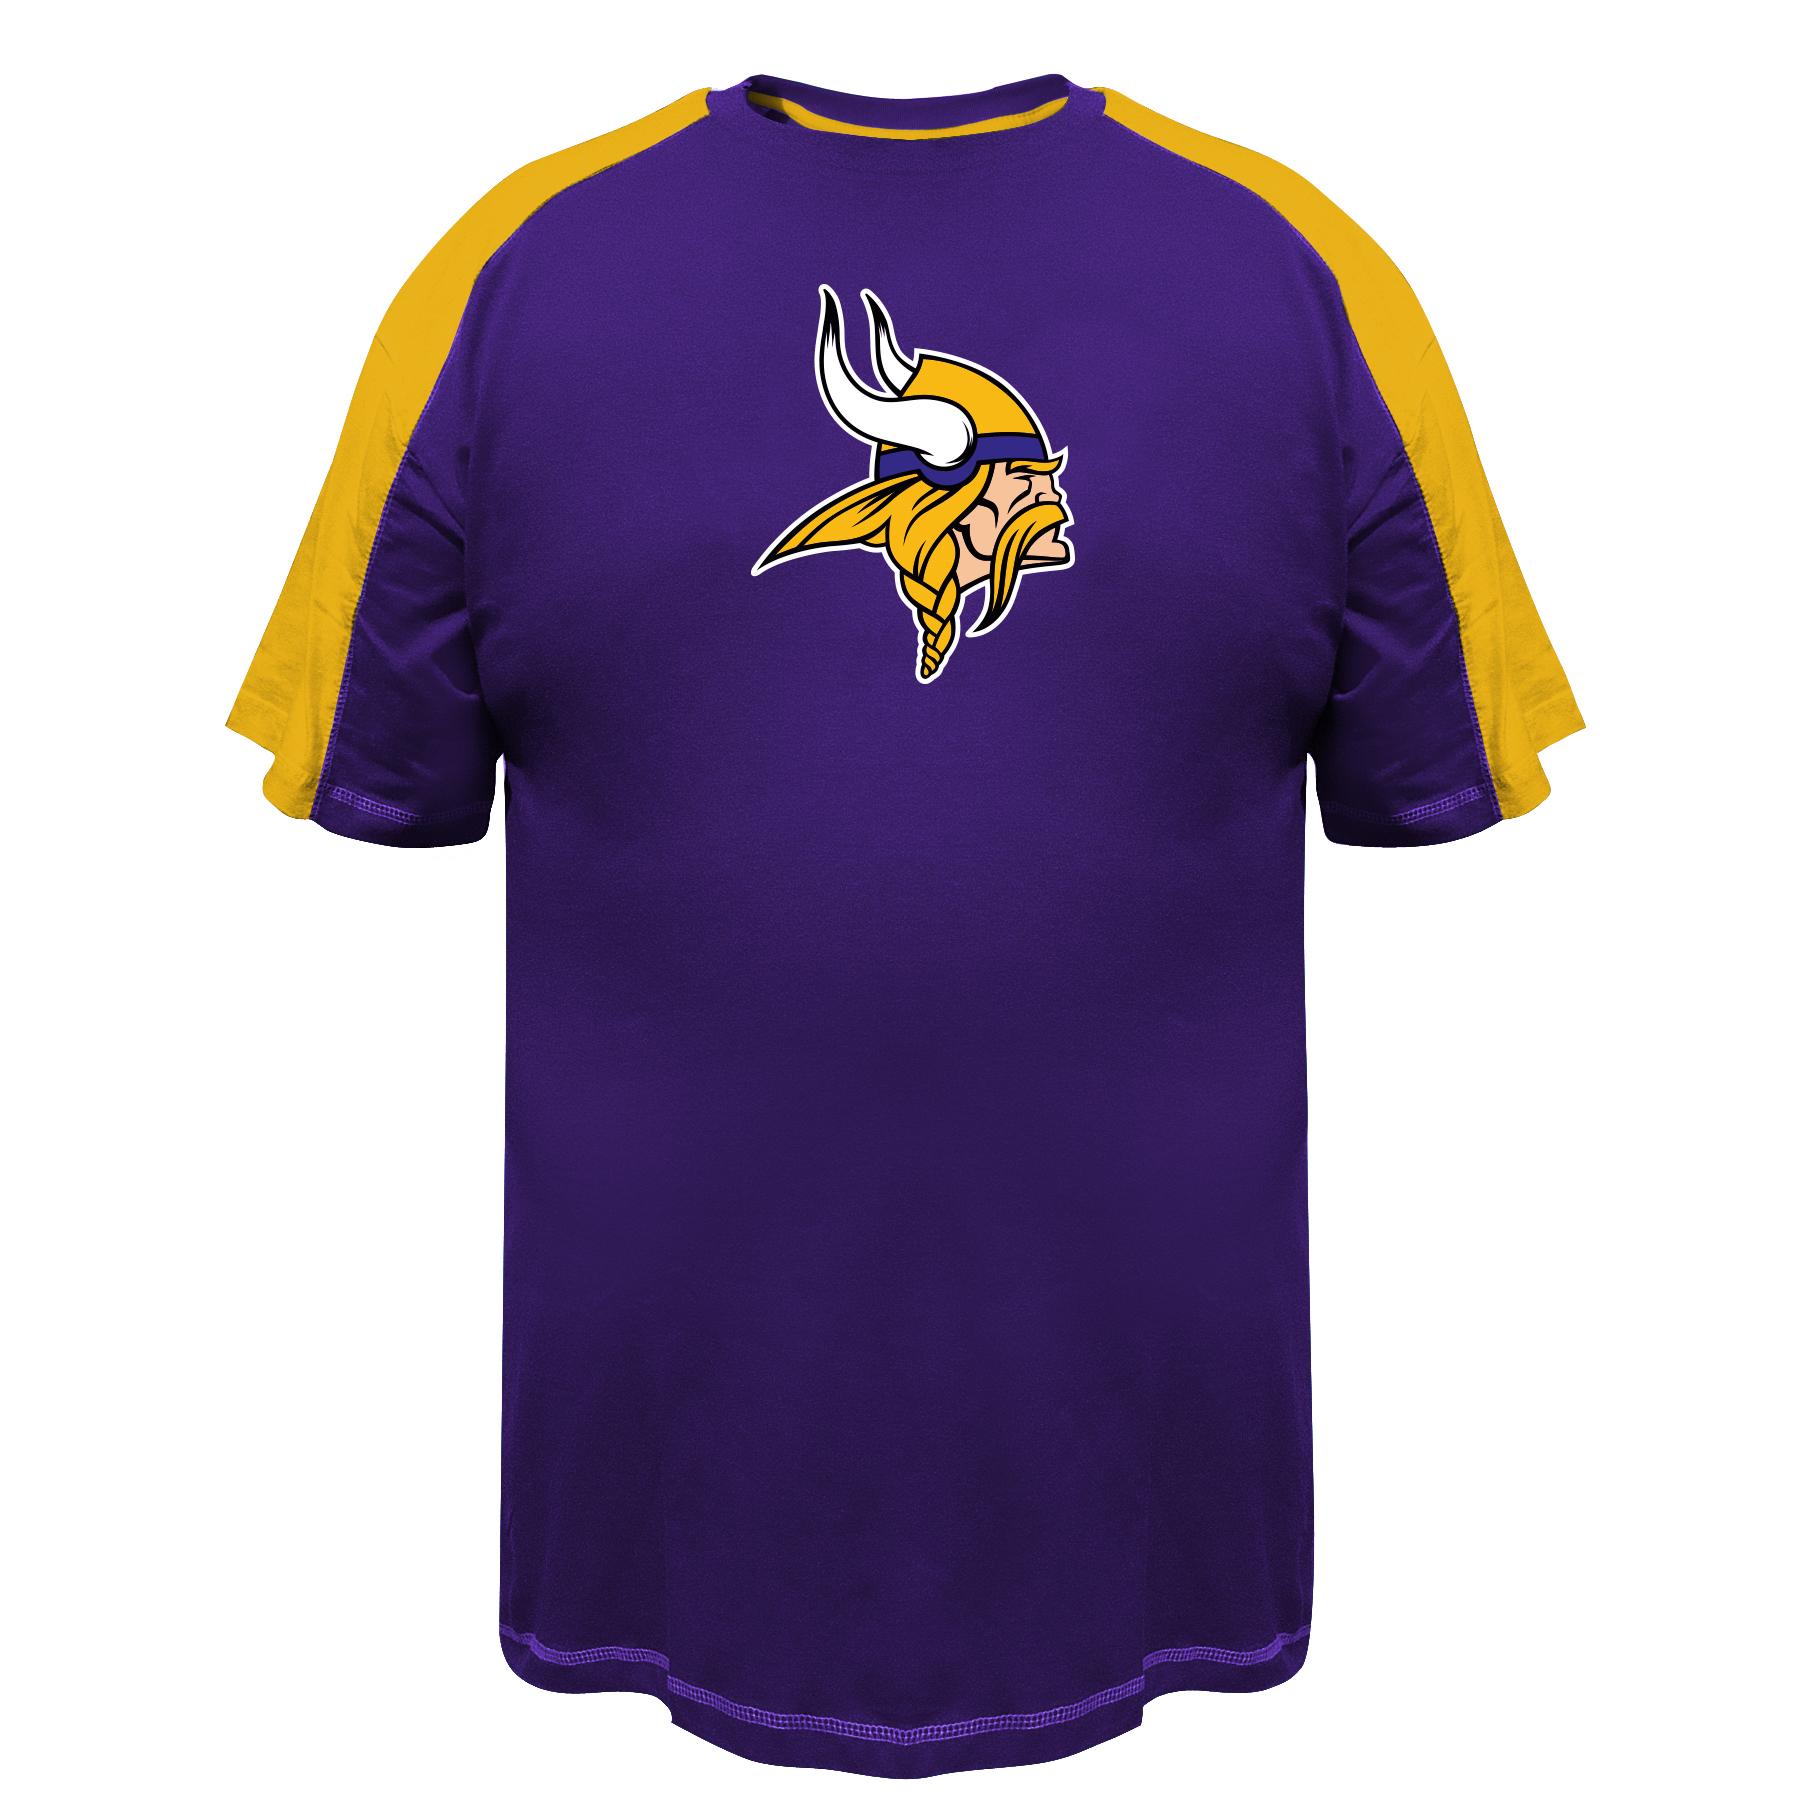 NFL Men's Big & Tall T-Shirt - Minnesota Vikings